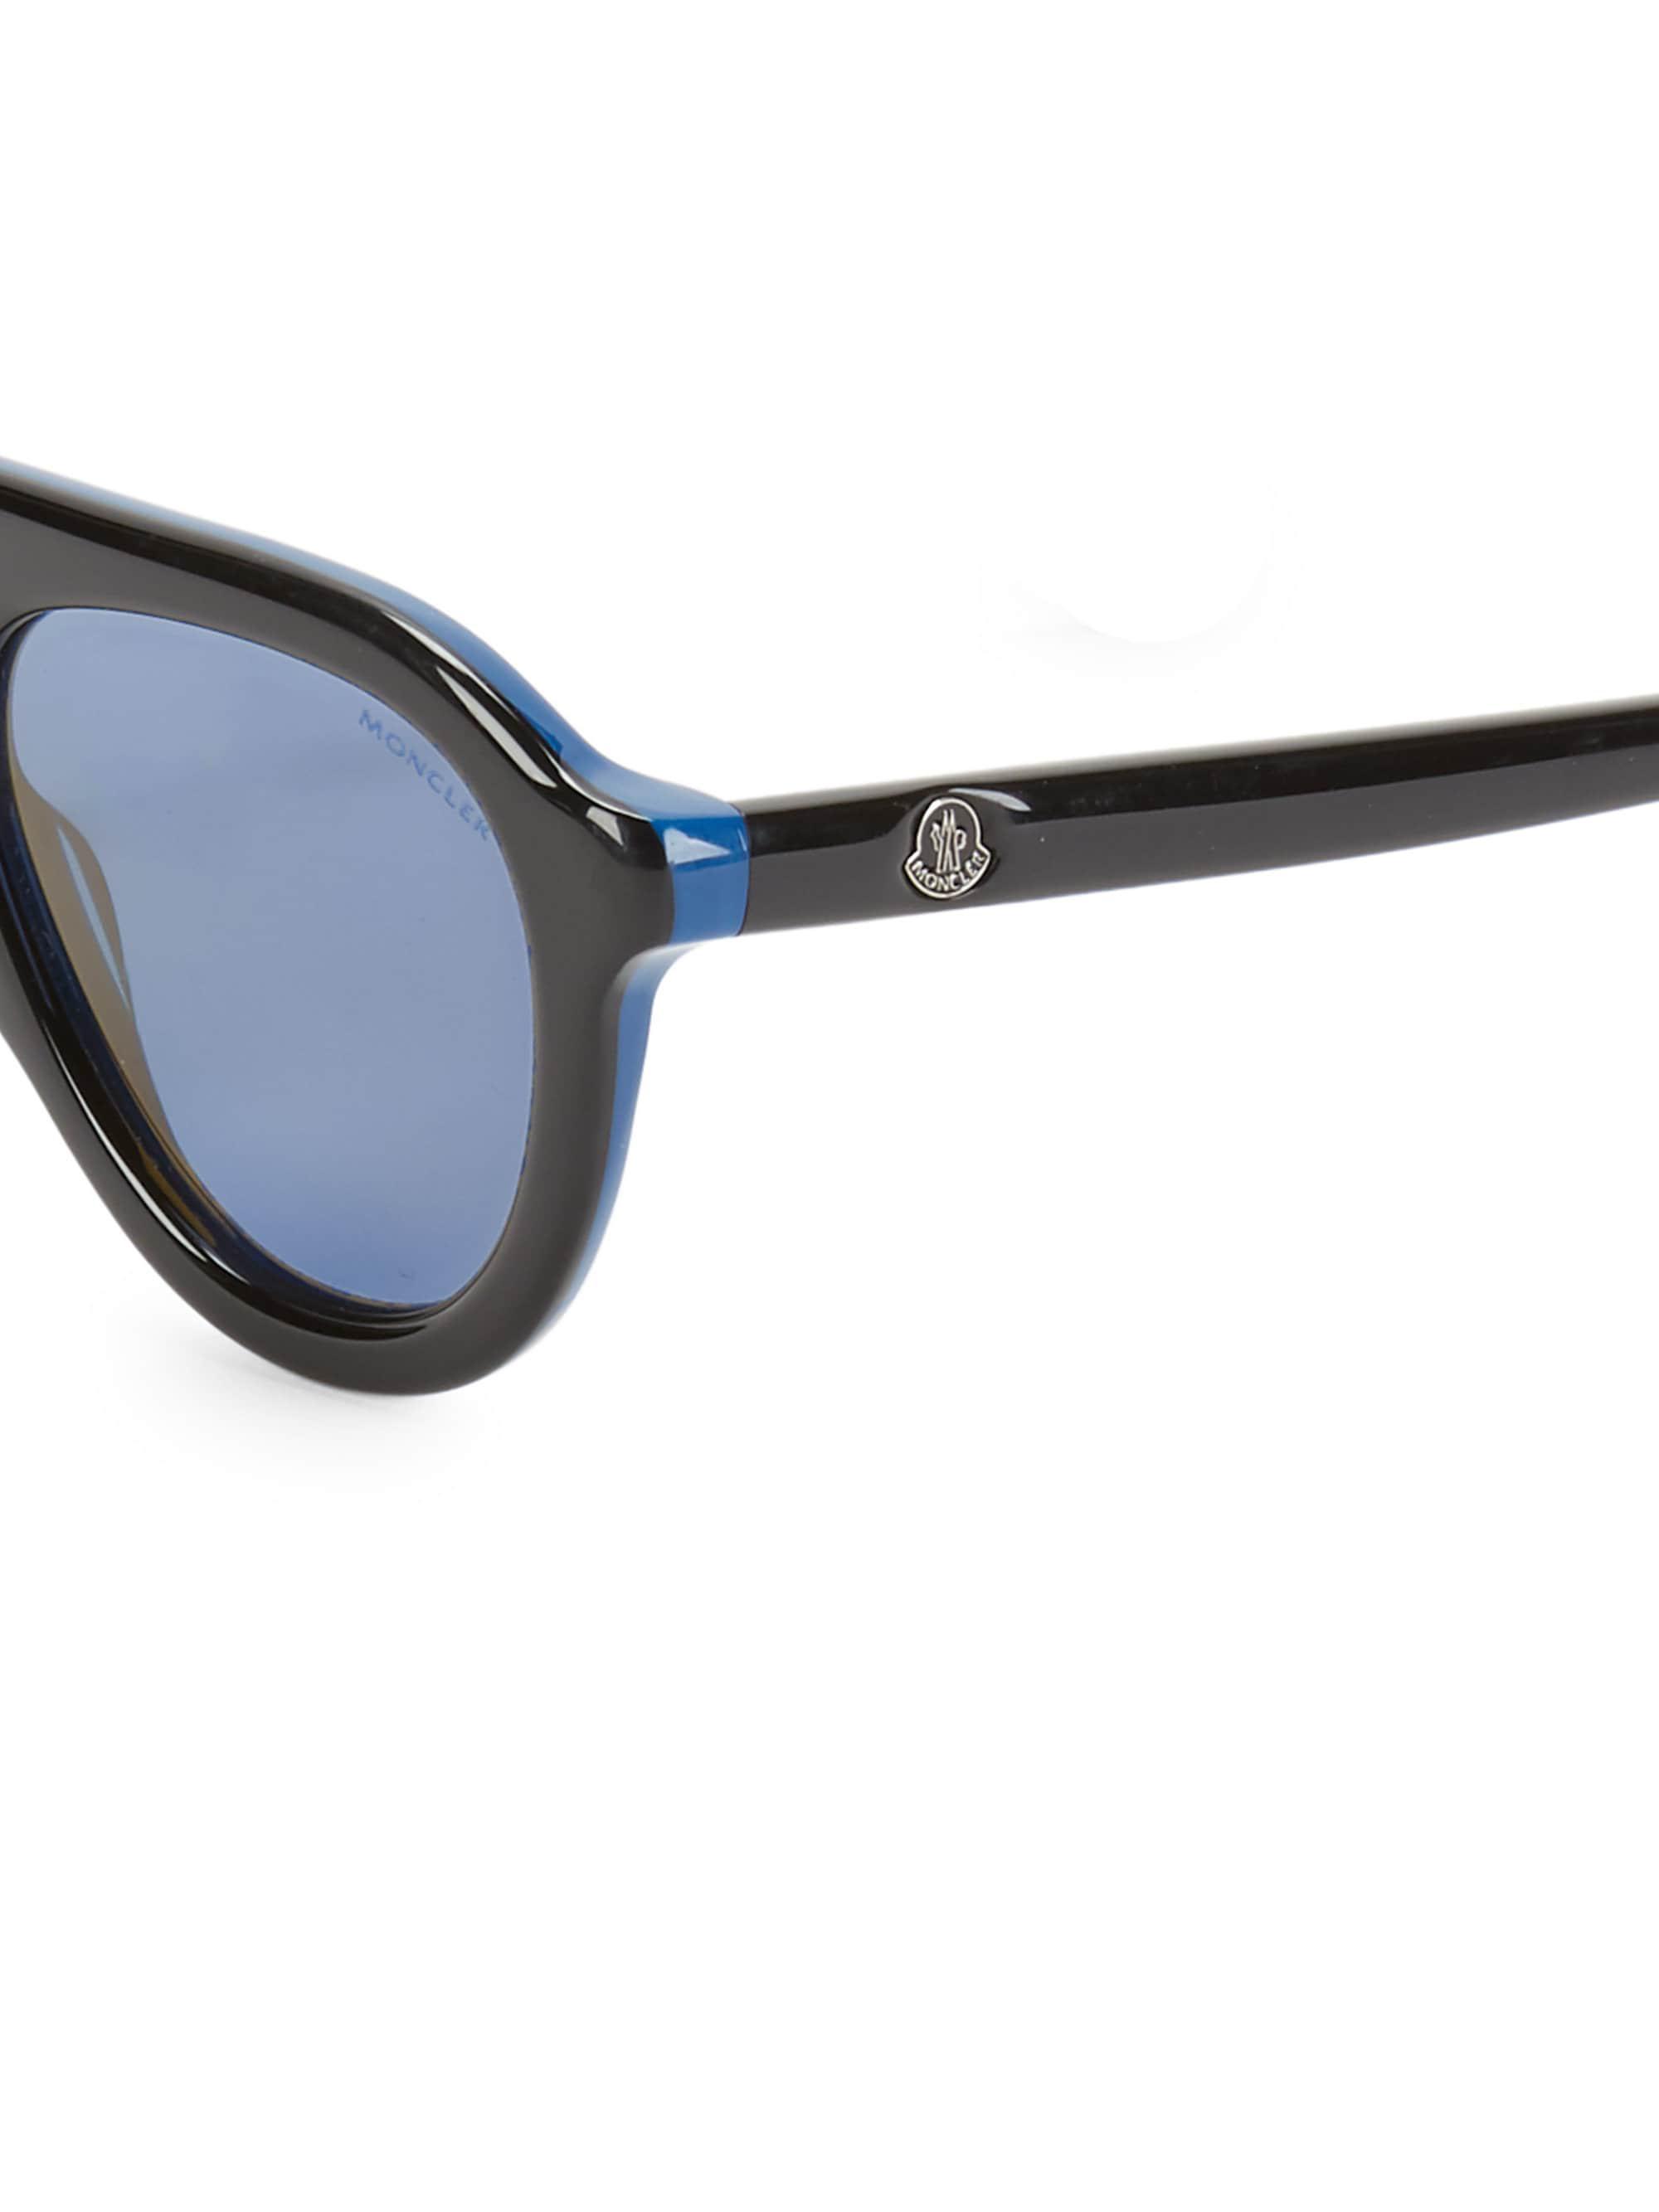 Moncler 52mm Sunglasses in Black for Men - Lyst